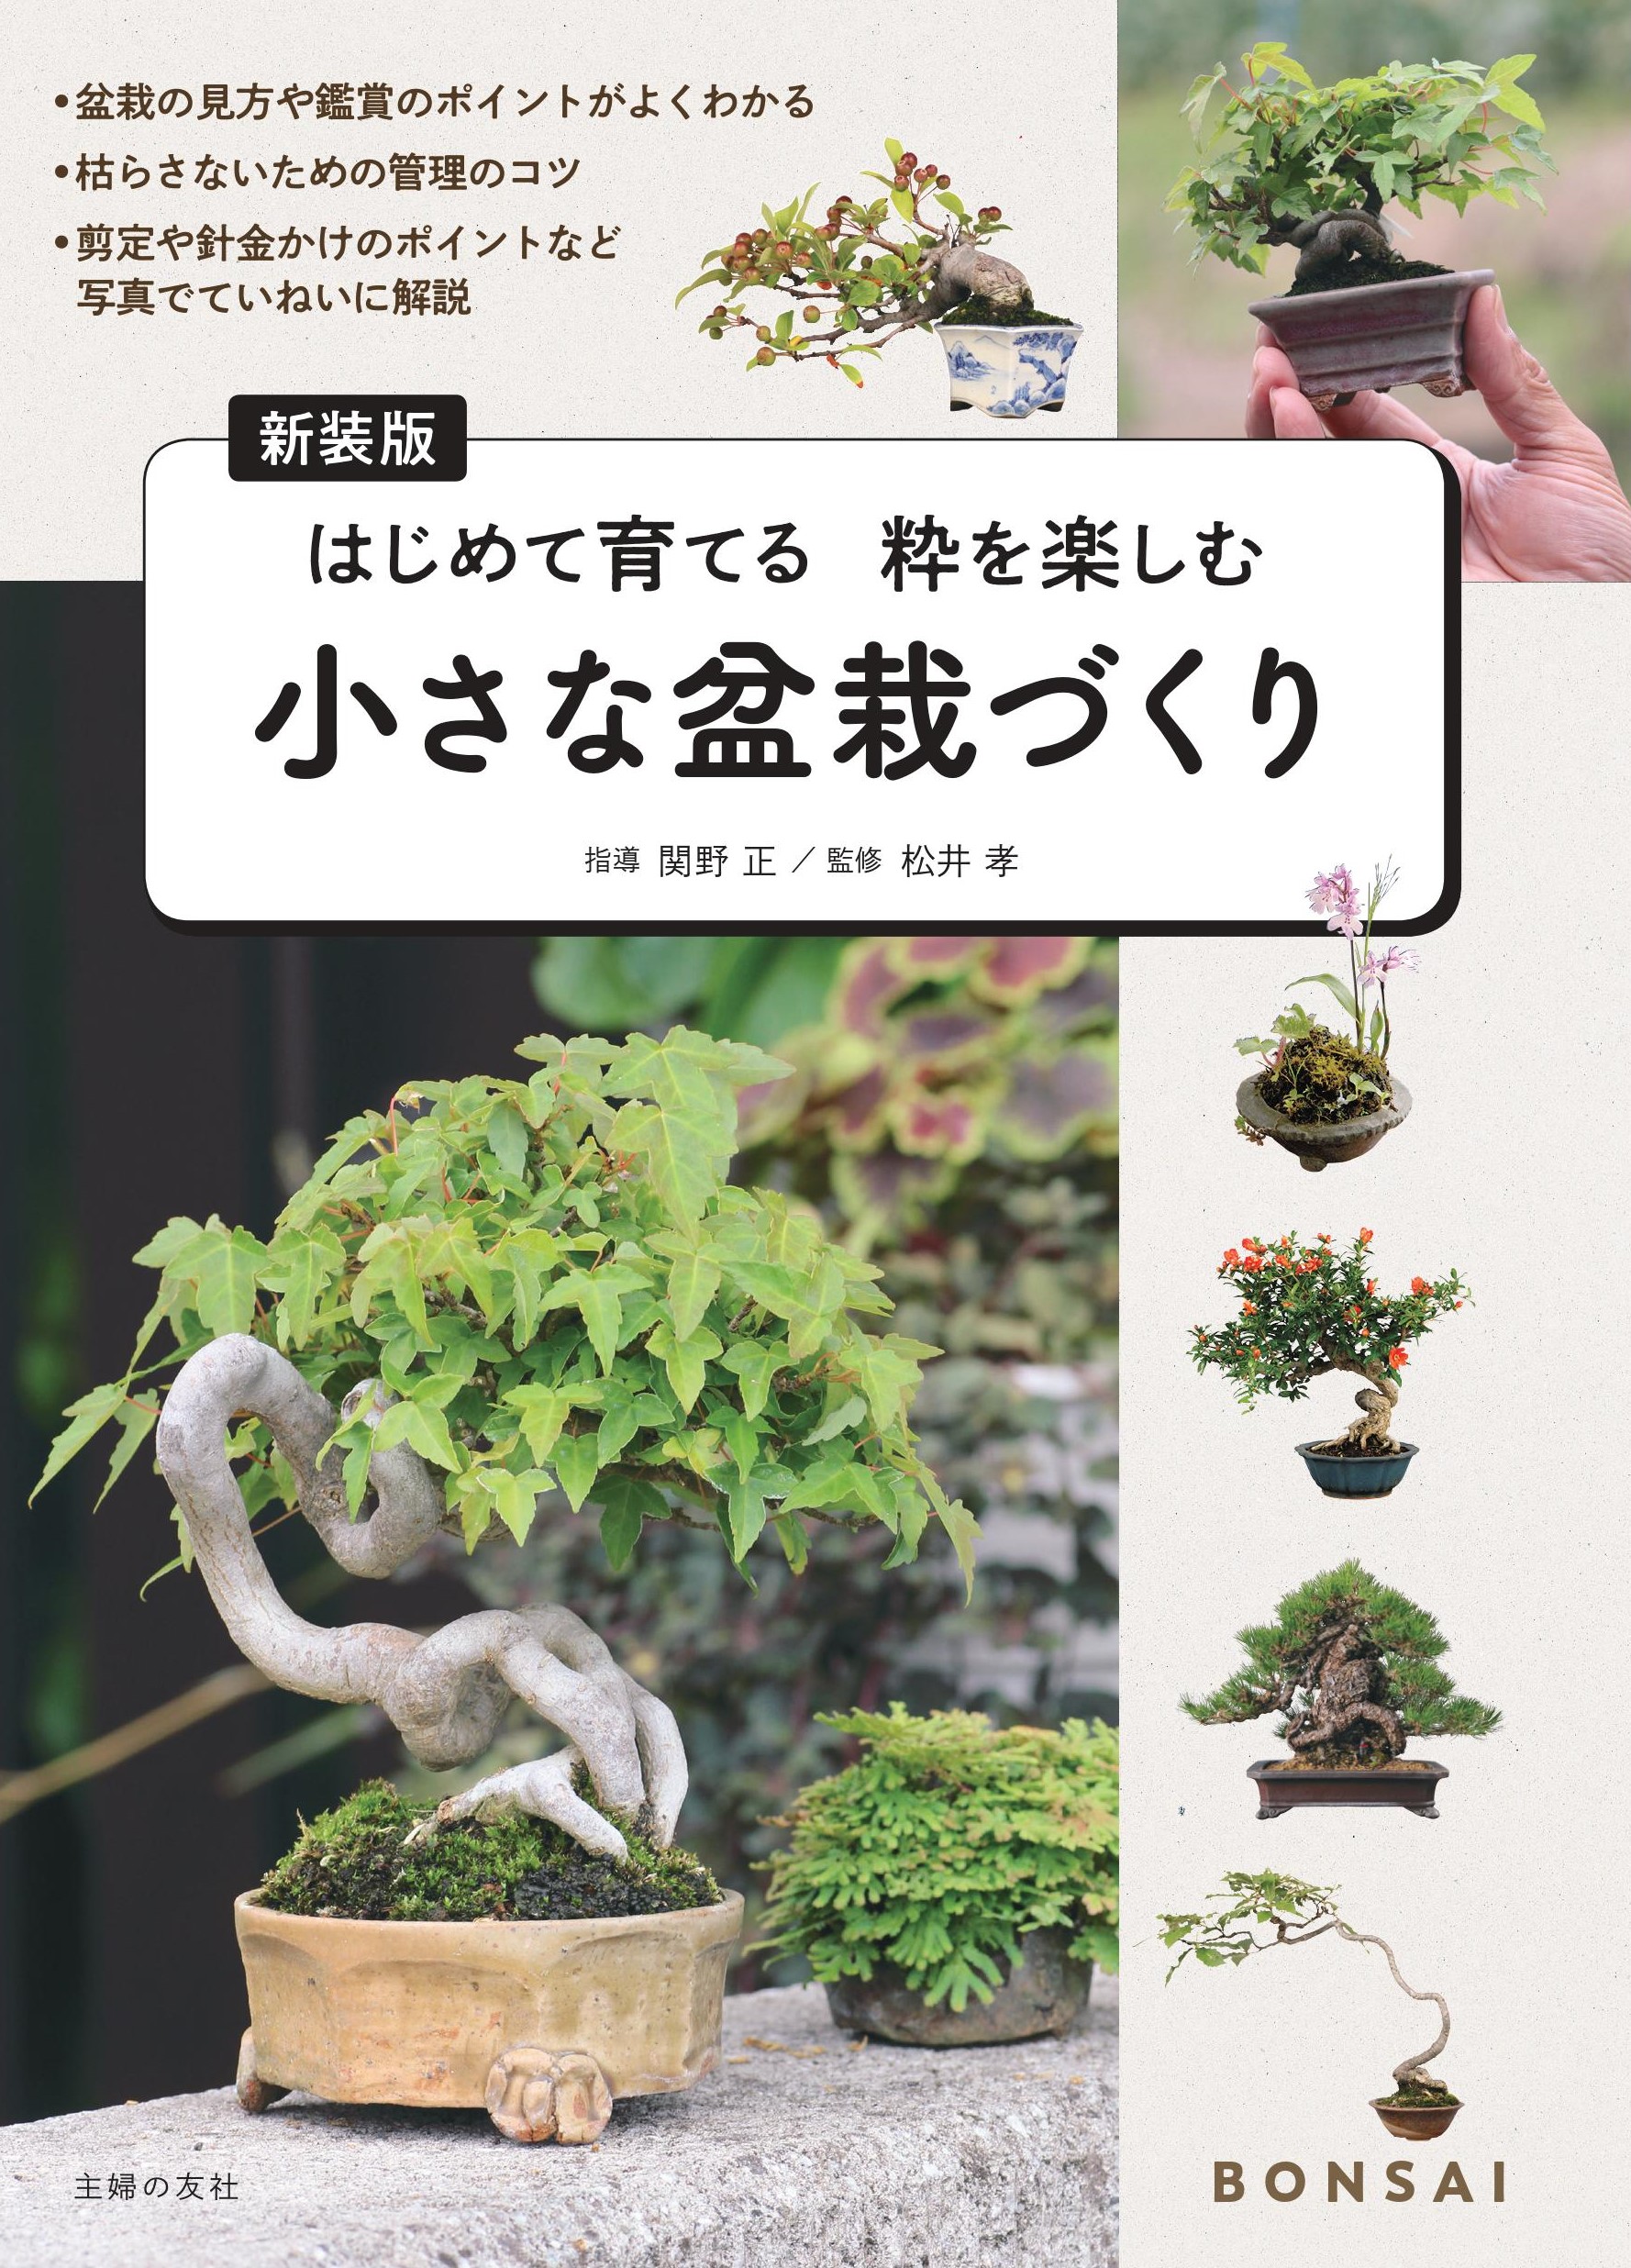 日本の四季を感じる小さな世界 ミニ盆栽をやってみよう 株式会社主婦の友社 のプレスリリース